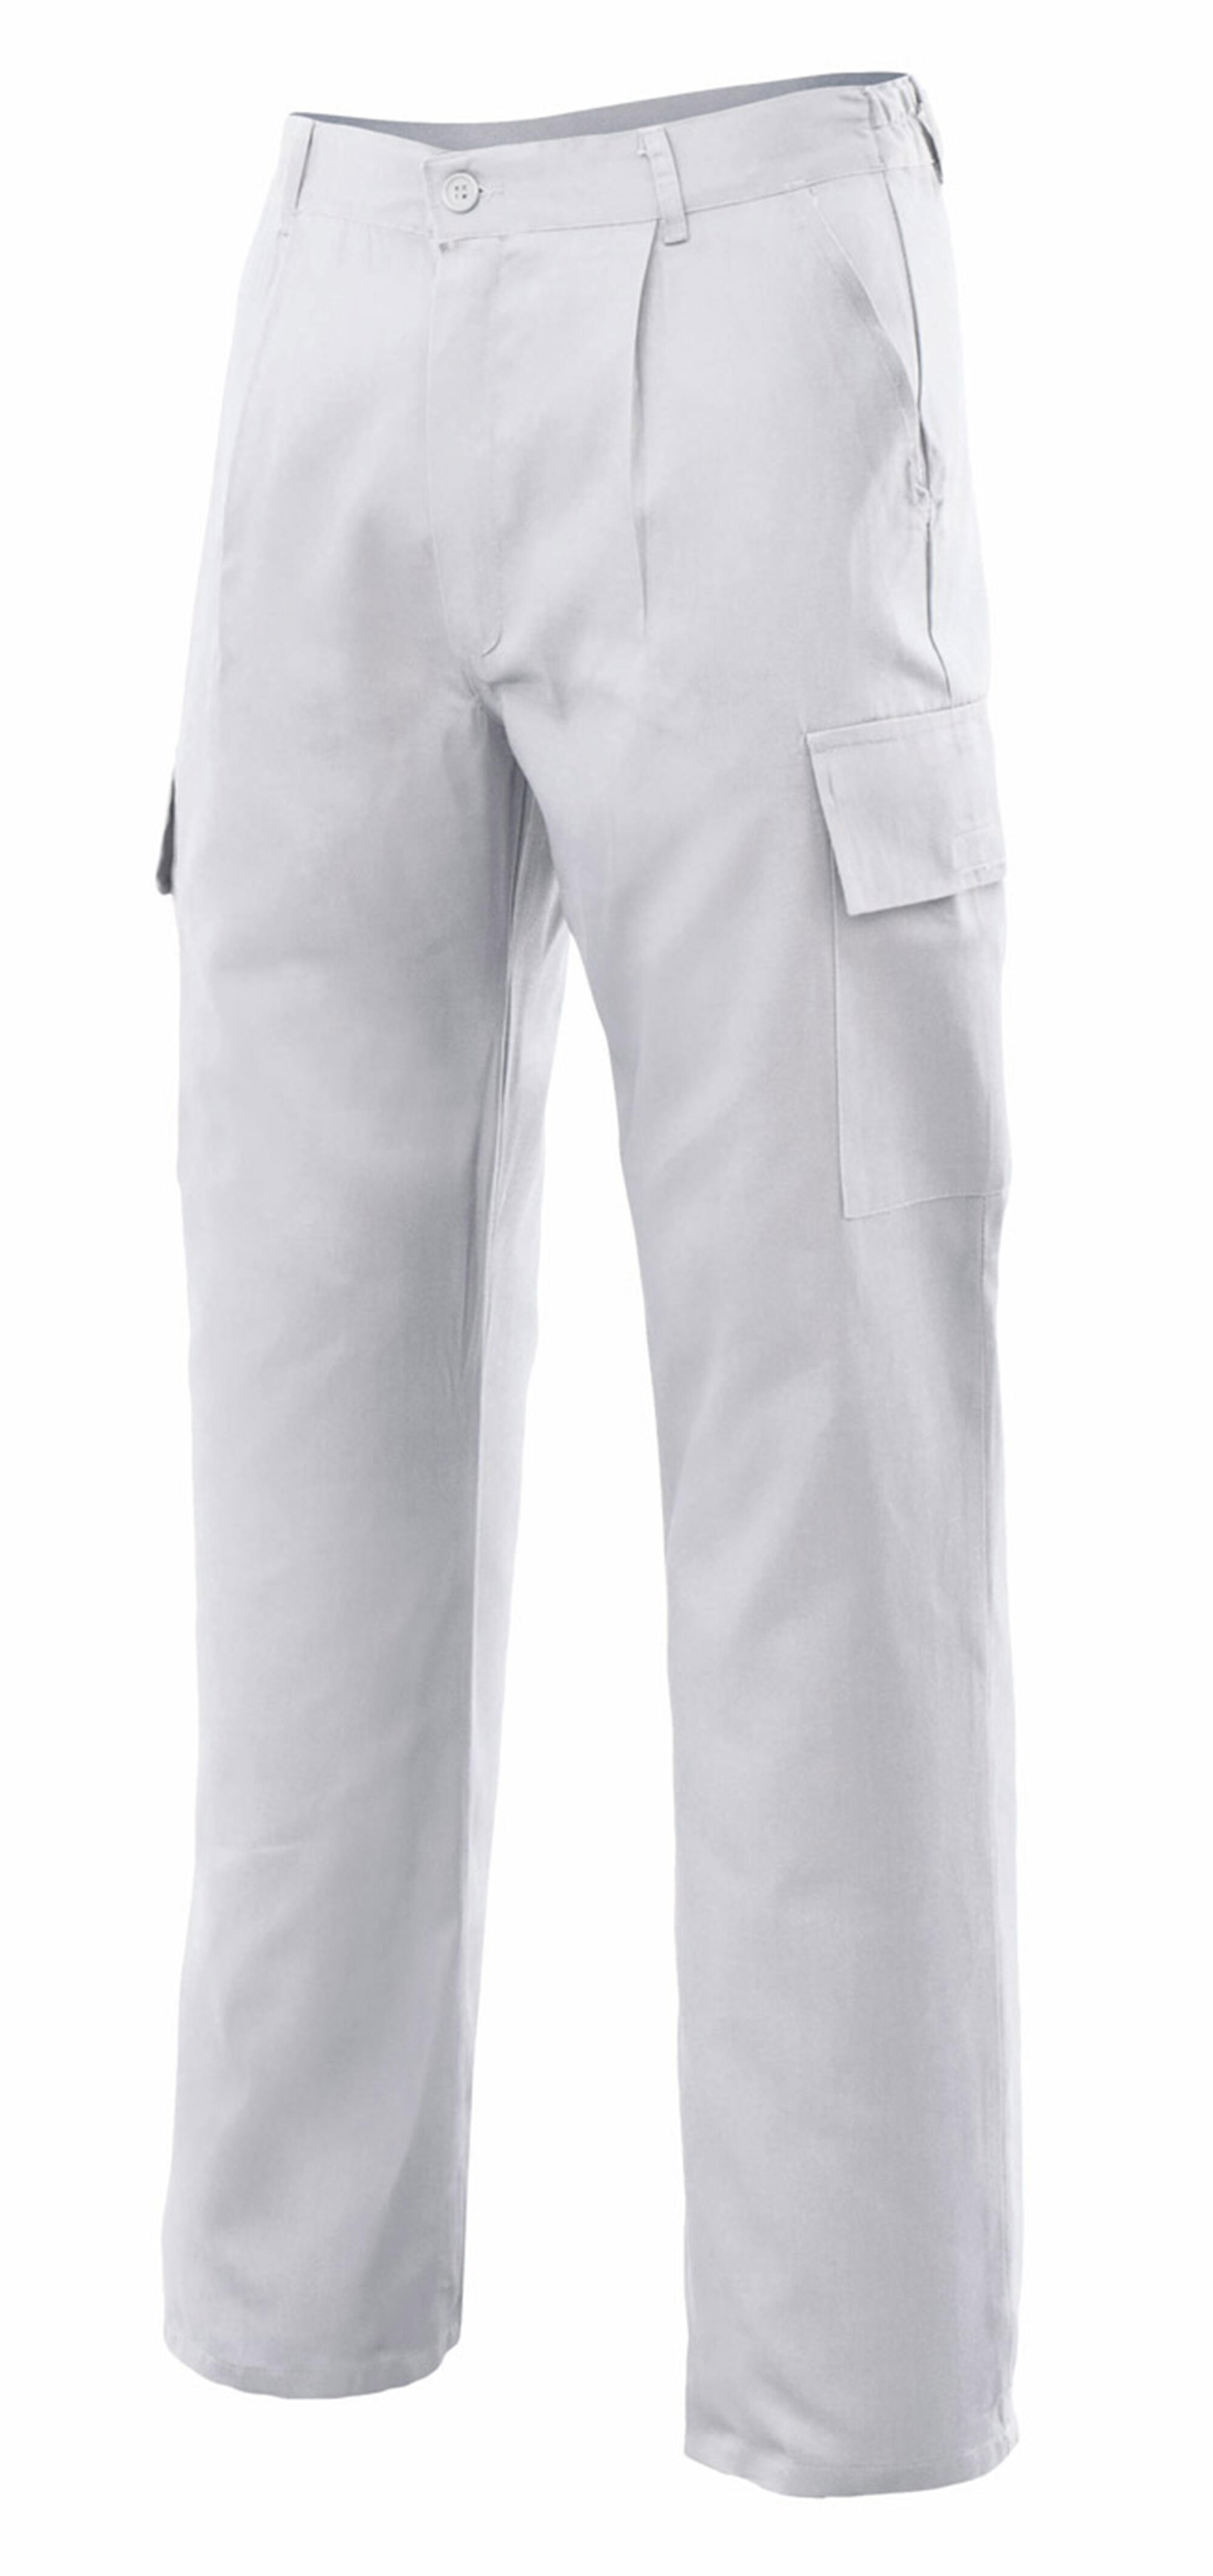 Pantalon de trabajo vertice multibolsillo blanco t58